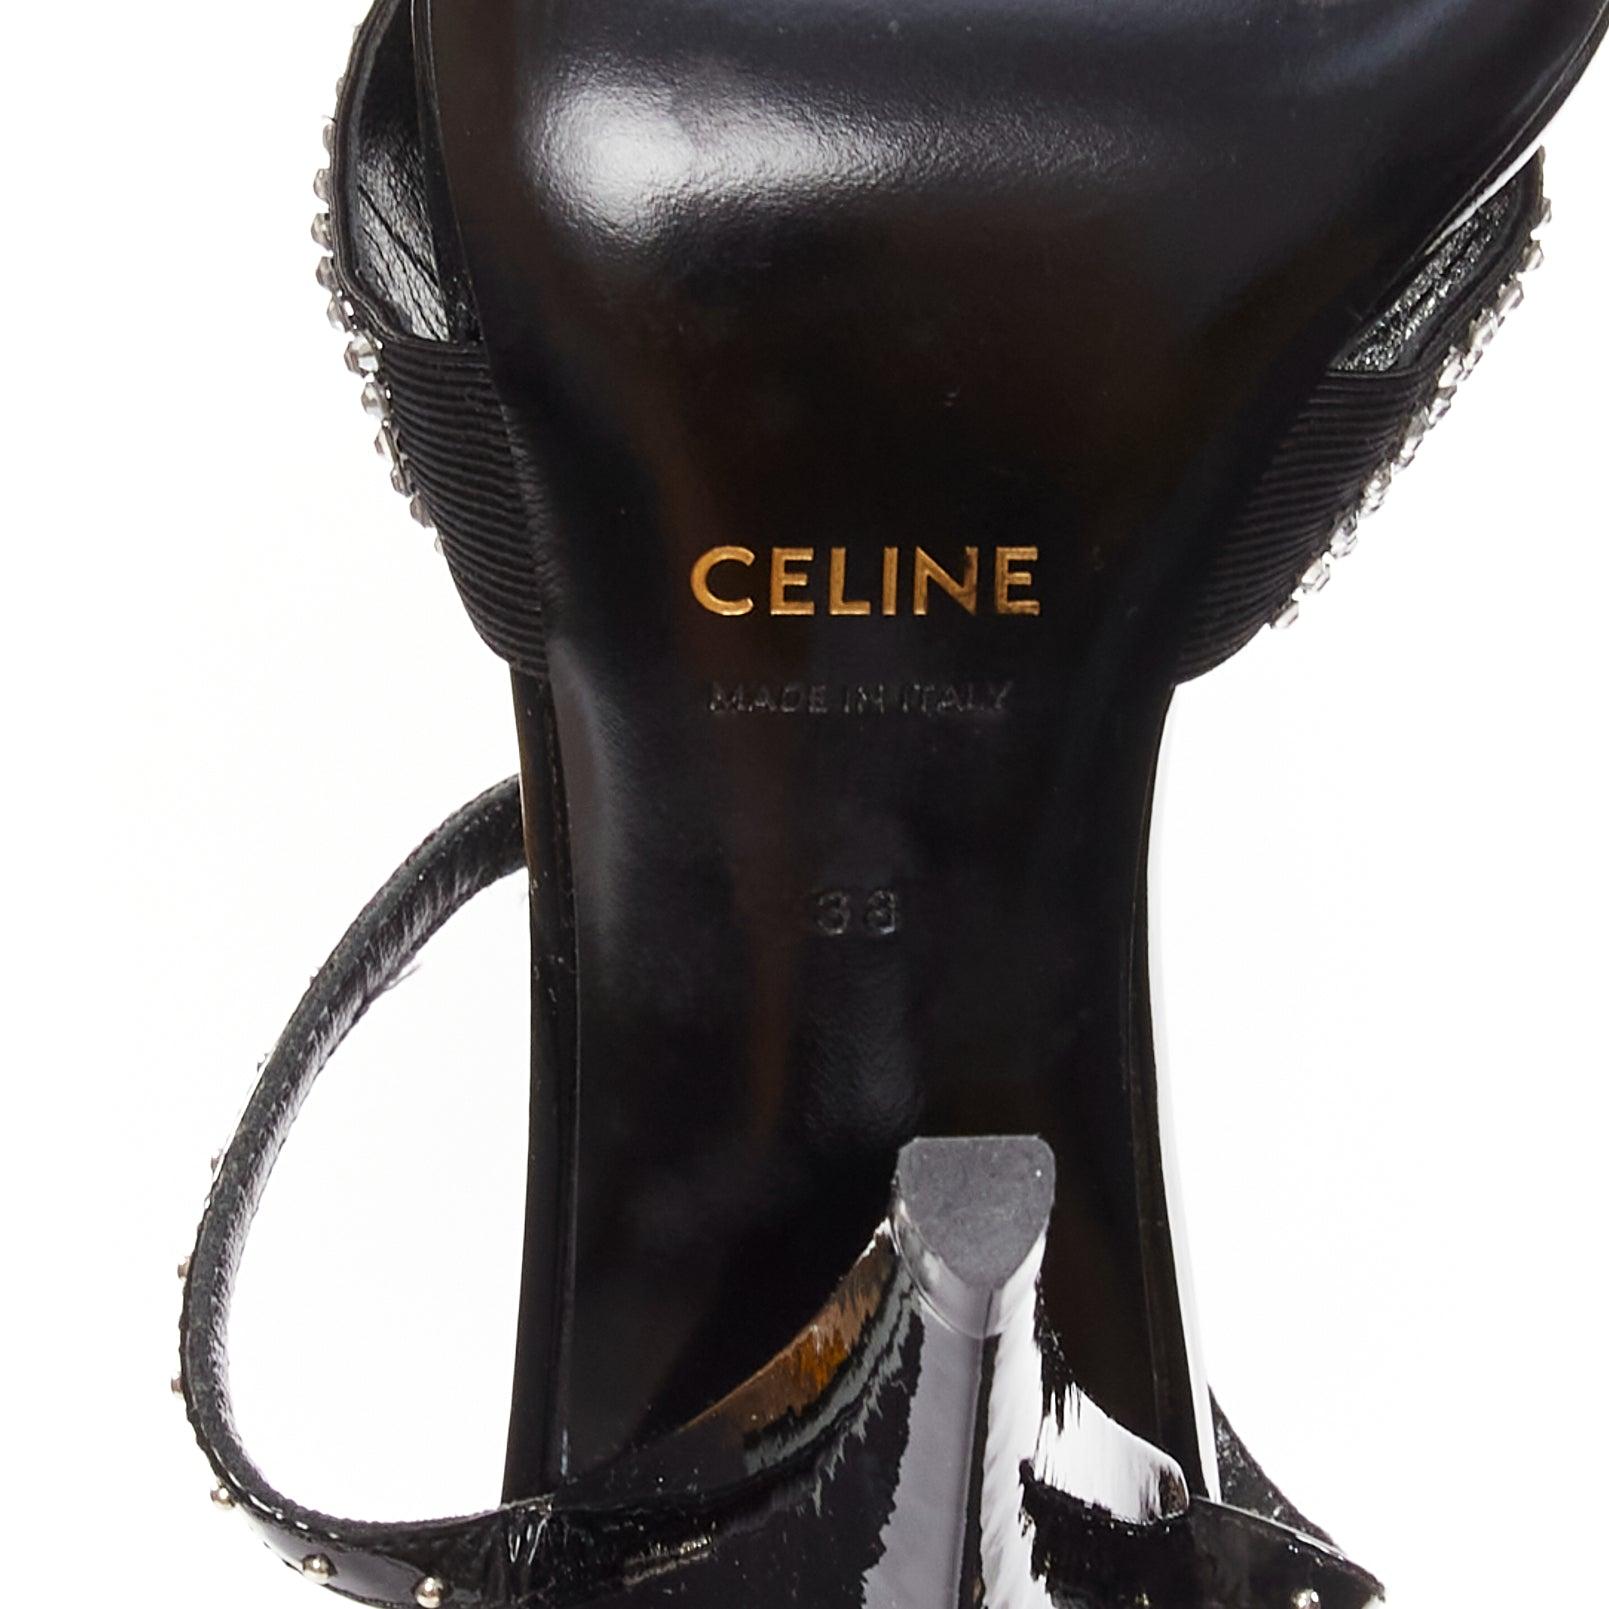 CELINE Hedi Slimane black patent leather silver crystals sandal heels EU38 For Sale 5